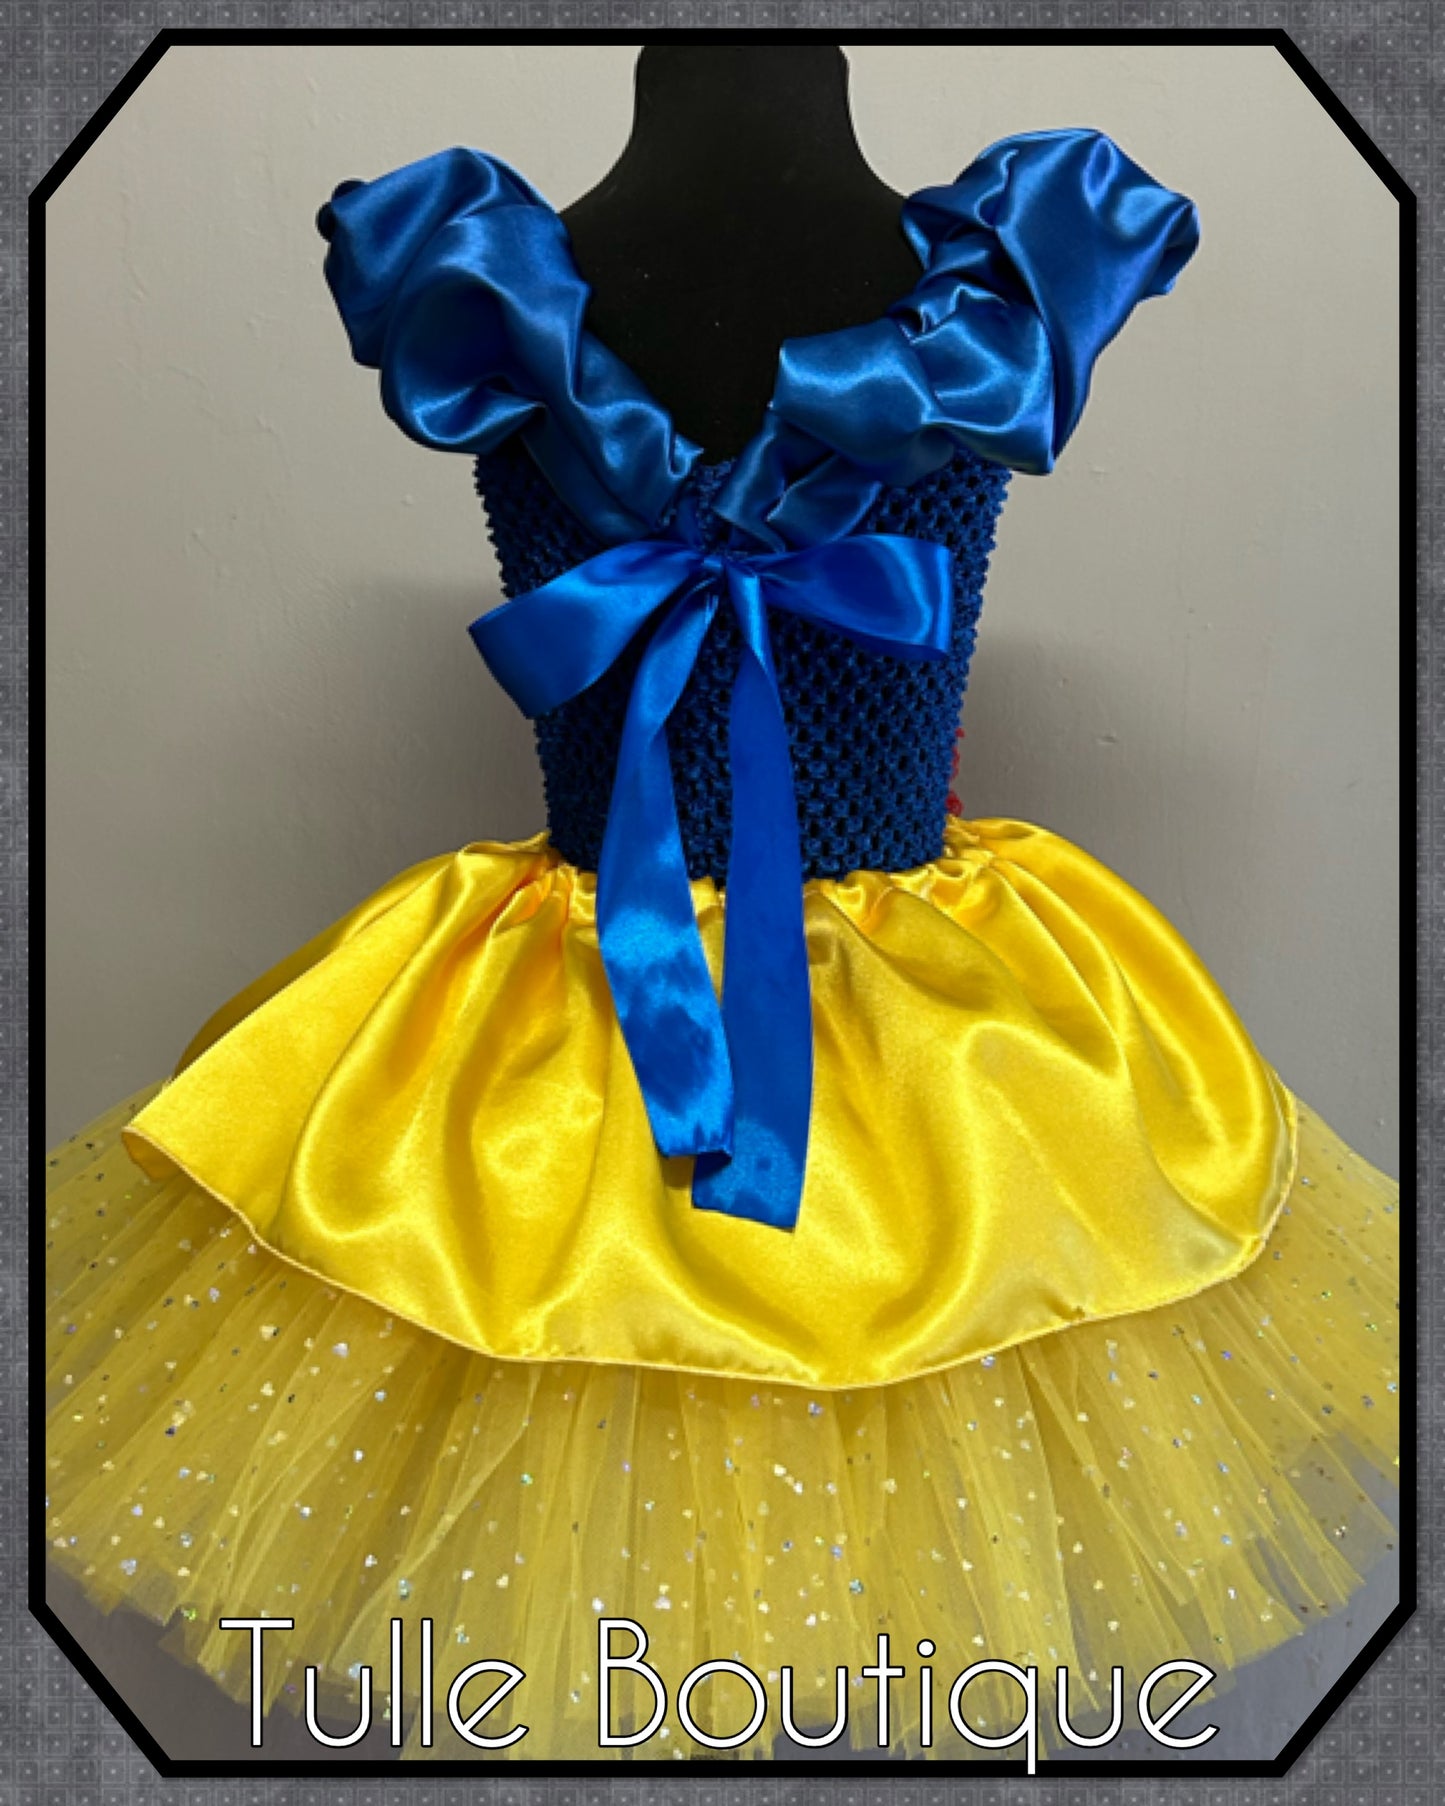 Snow White Princess ballgown tutu birthday dress